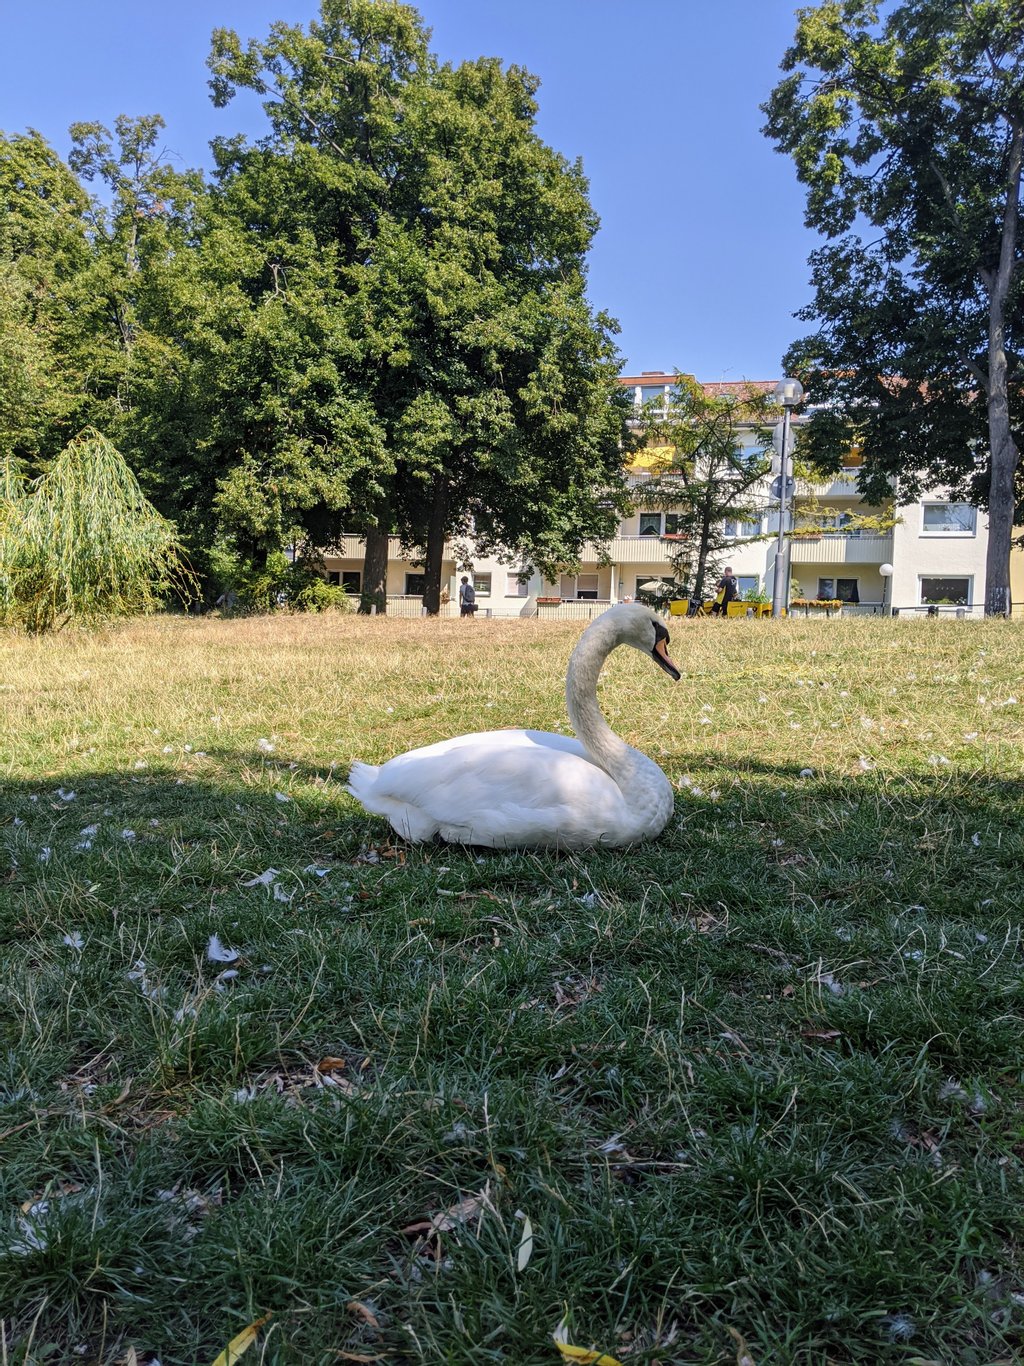 Swan and shade